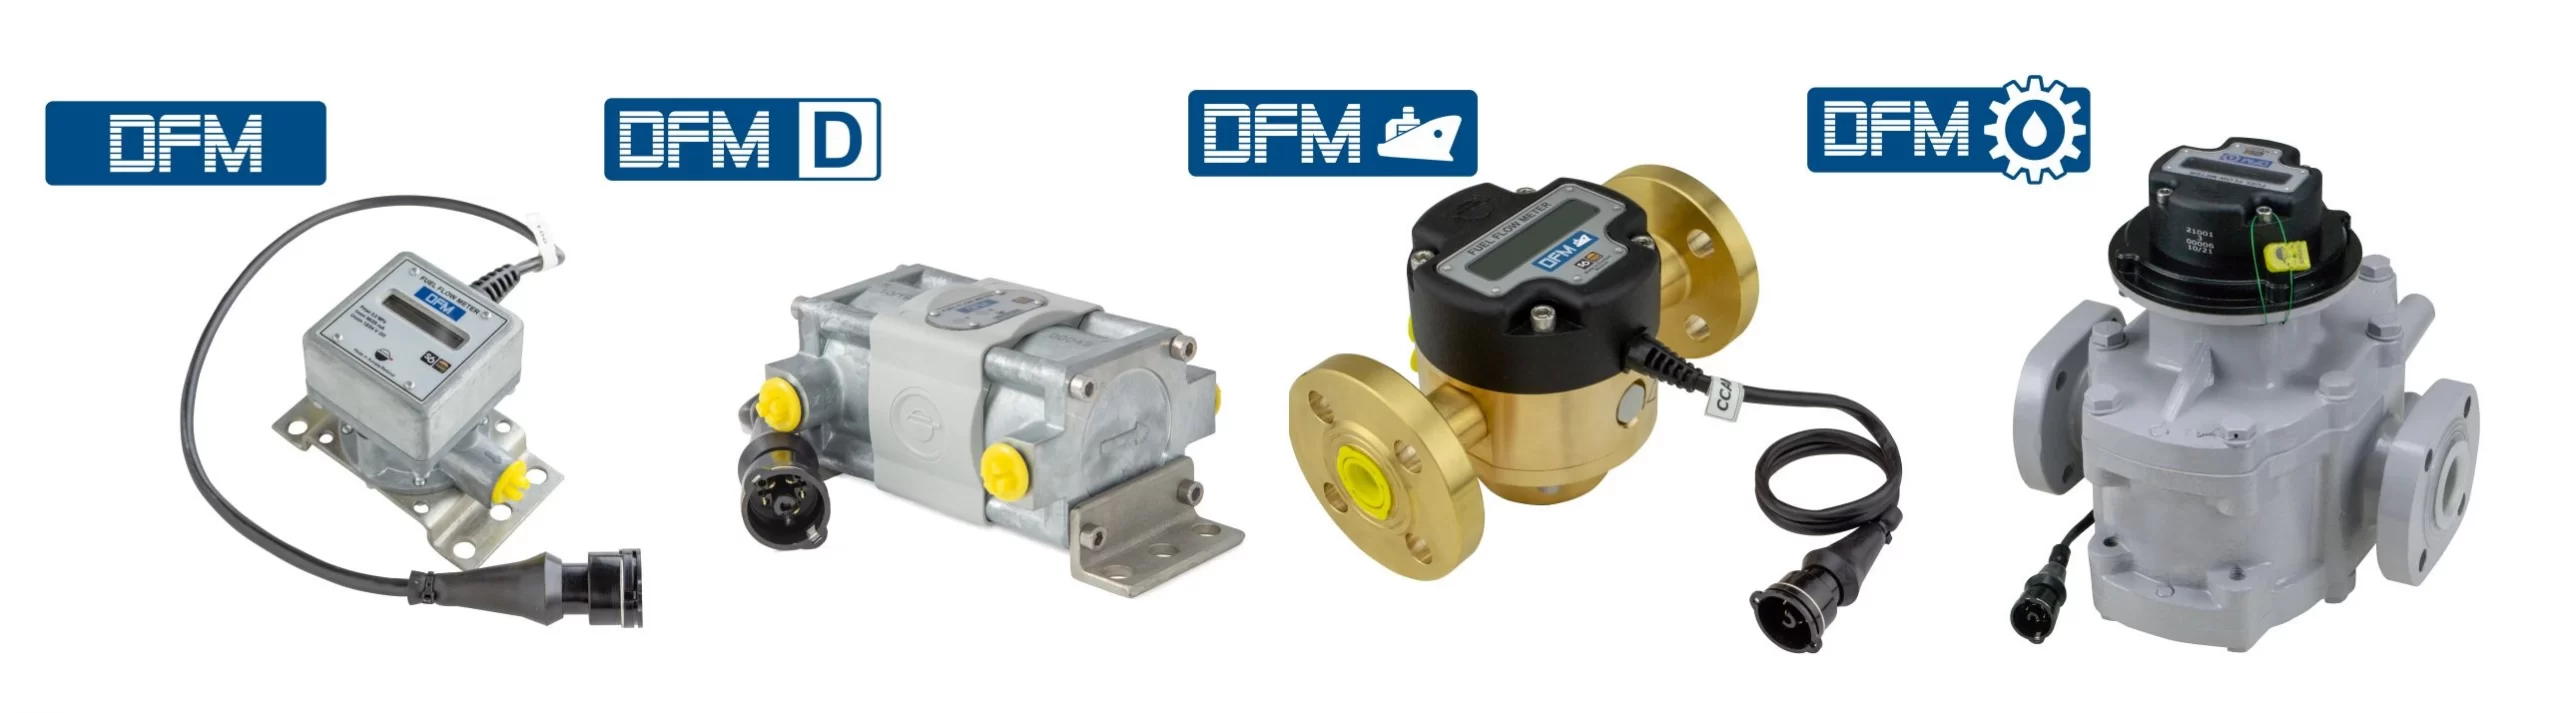 DFM fuel flowmeters